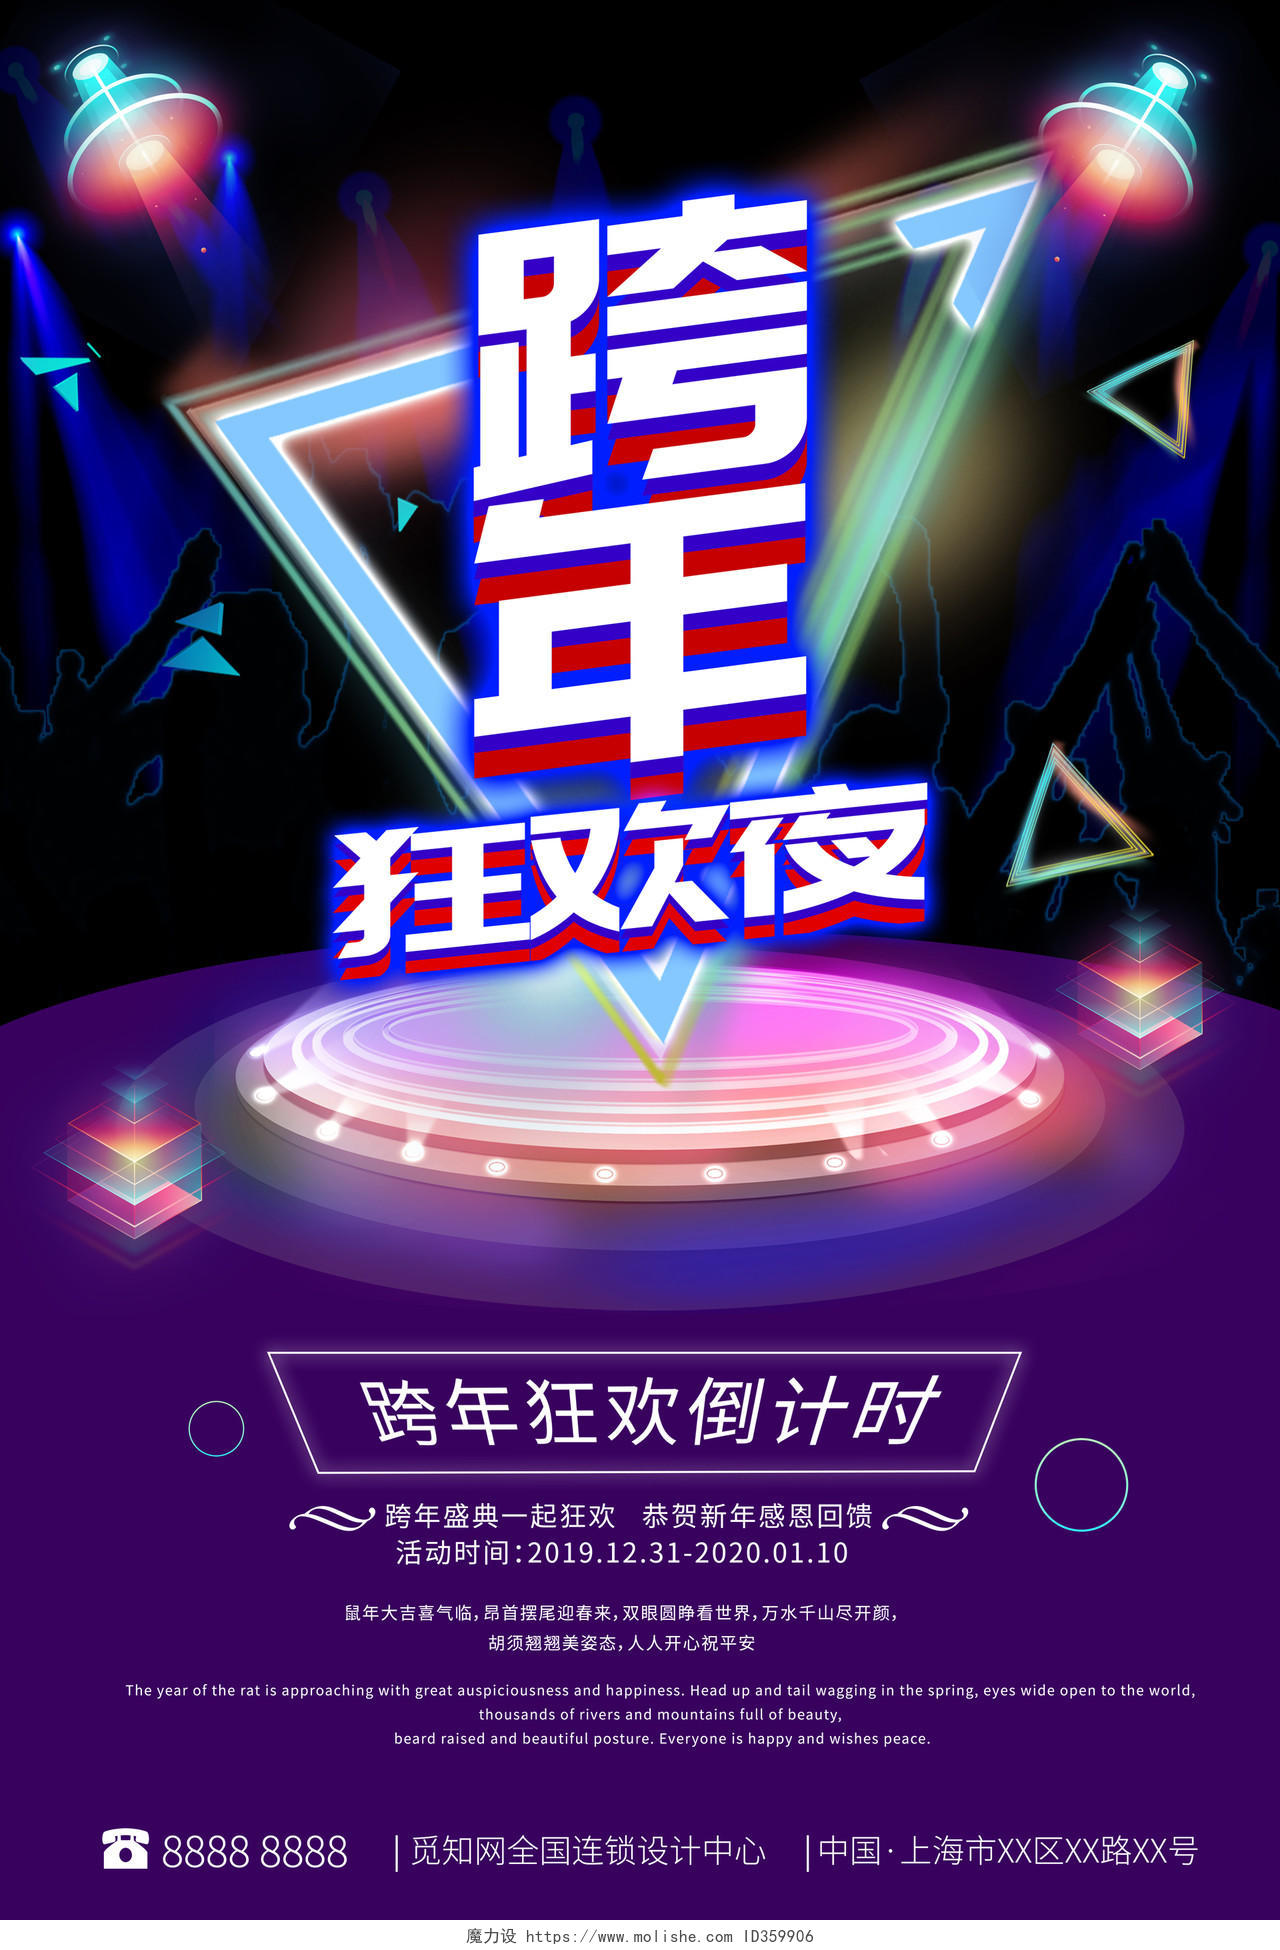 2020新年酷炫元旦节跨年狂欢夜倒计时盛典发光宣传海报